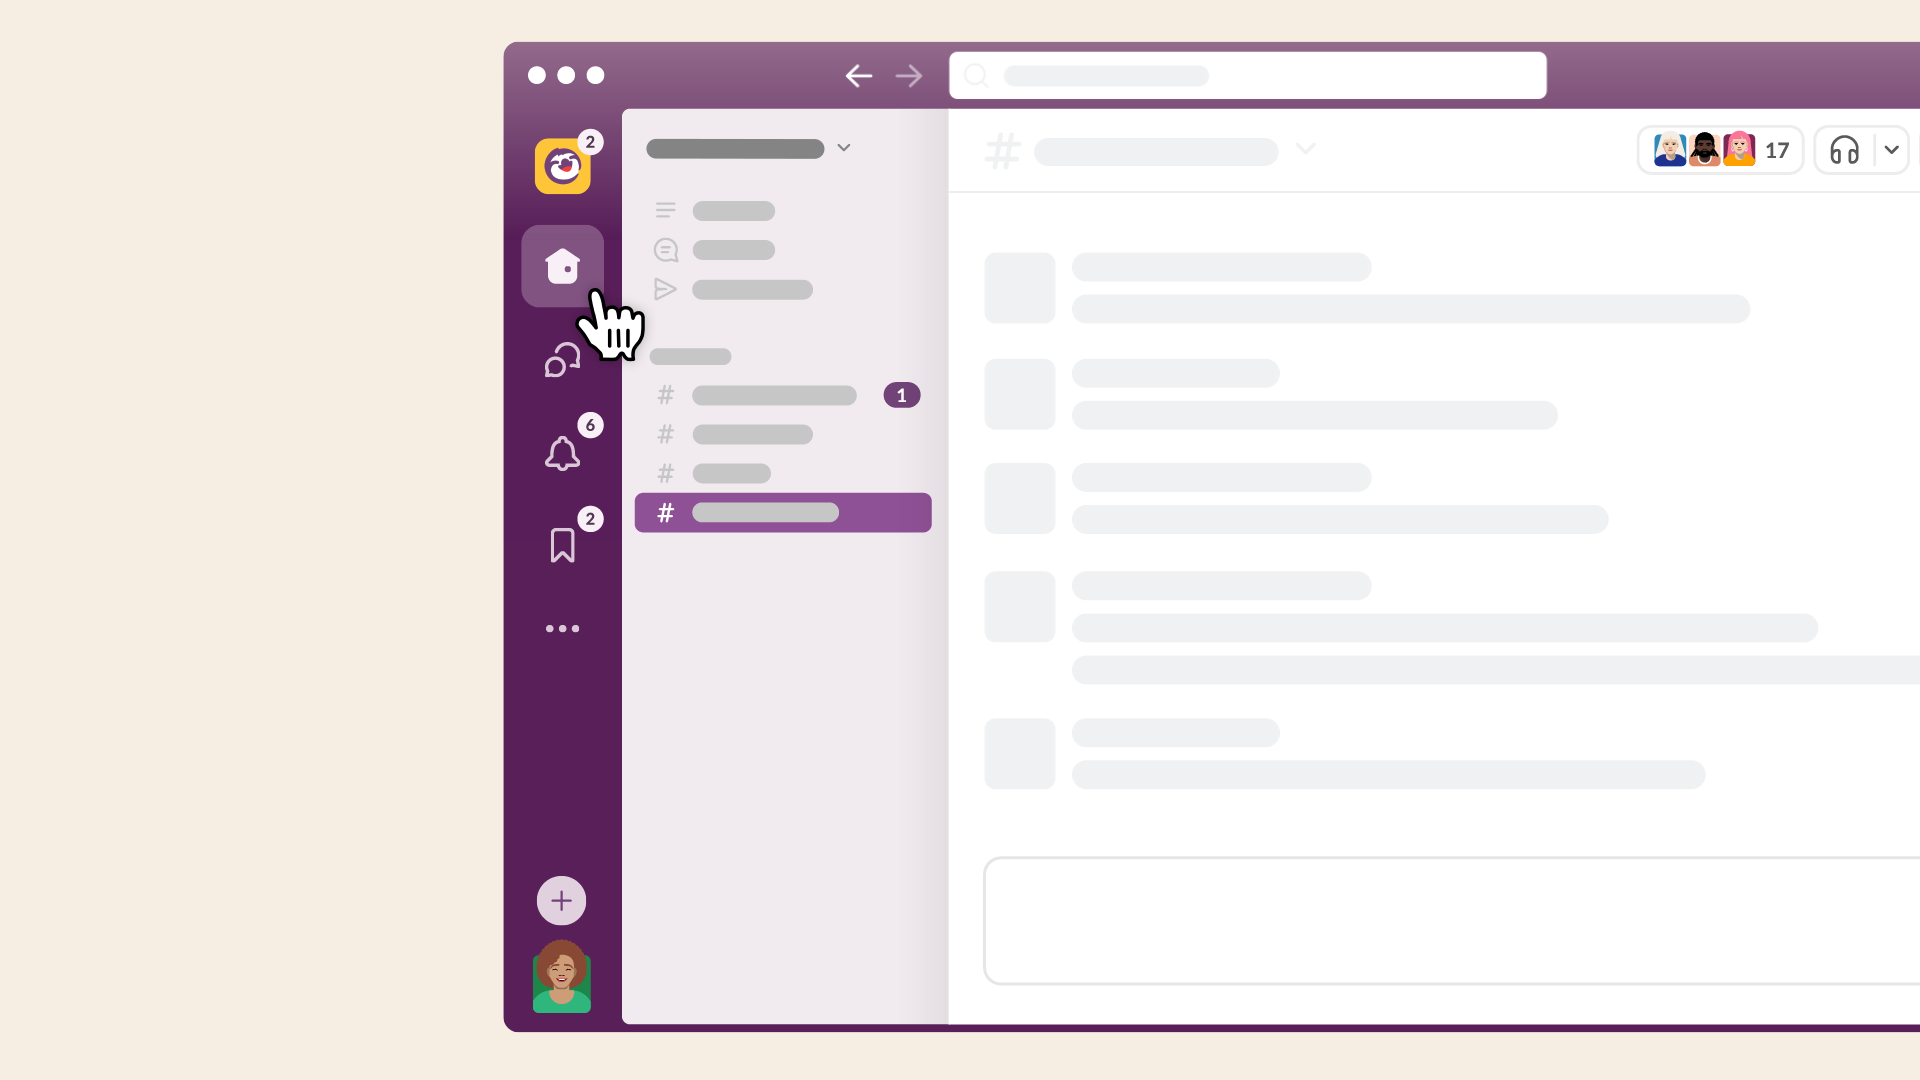 Visualização da interface do Slack, incluindo a barra de pesquisa, o botão de mais e a foto do perfil